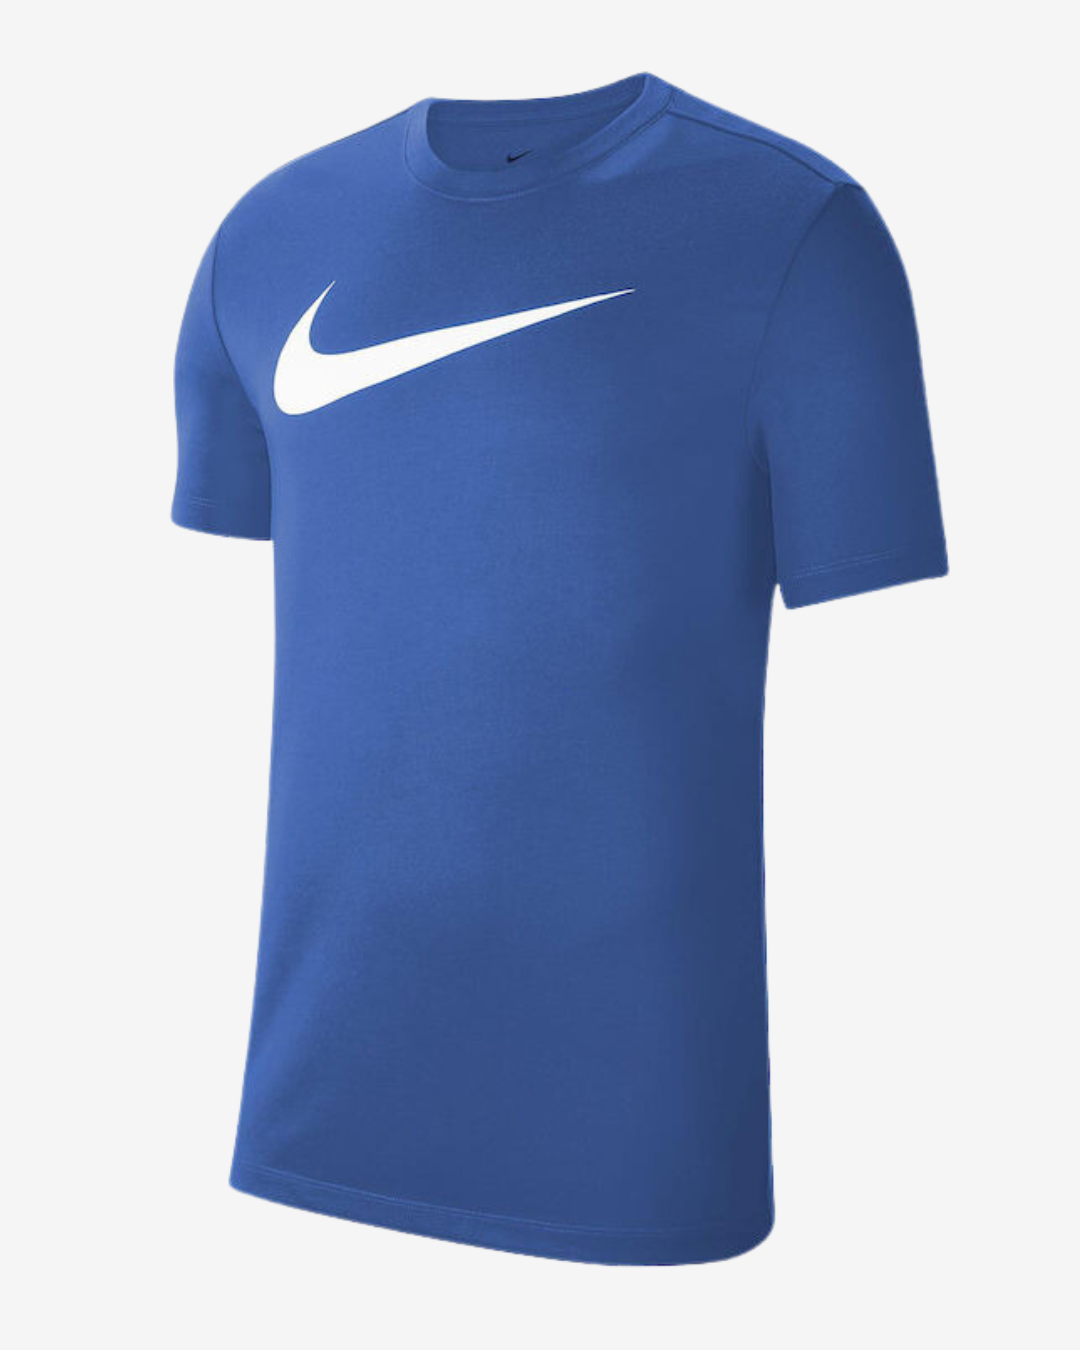 Nike Dri-fit park 20 t-shirt - Blå - Str. XL - Modish.dk